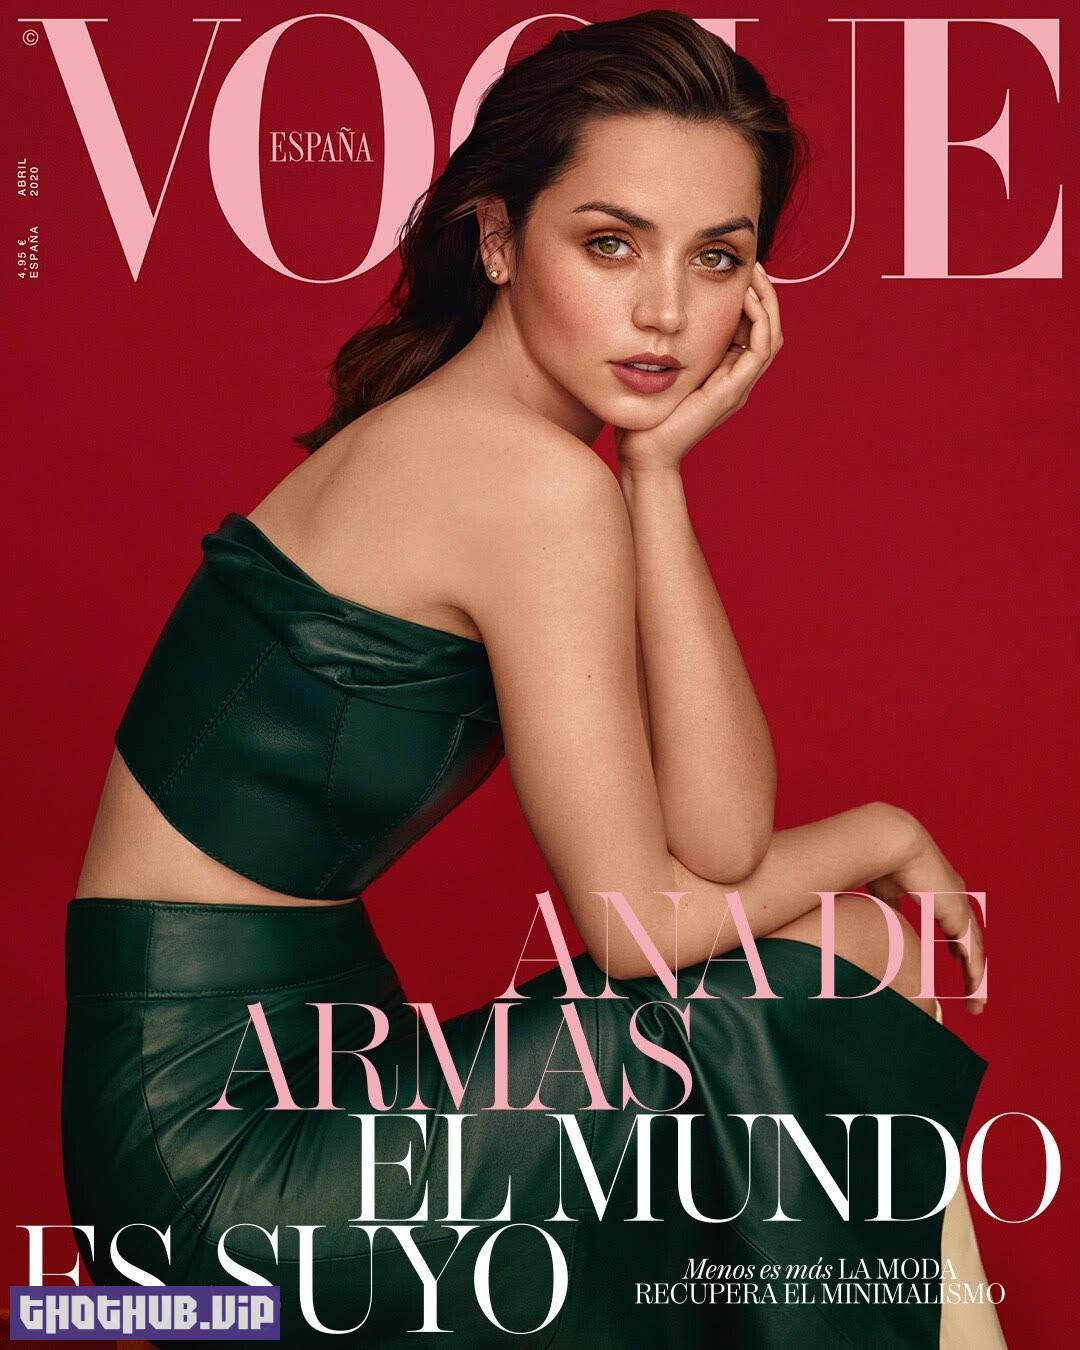 1710586010 606 Ana De Armas Sexy in Vogue Magazine Spain 10 Photos